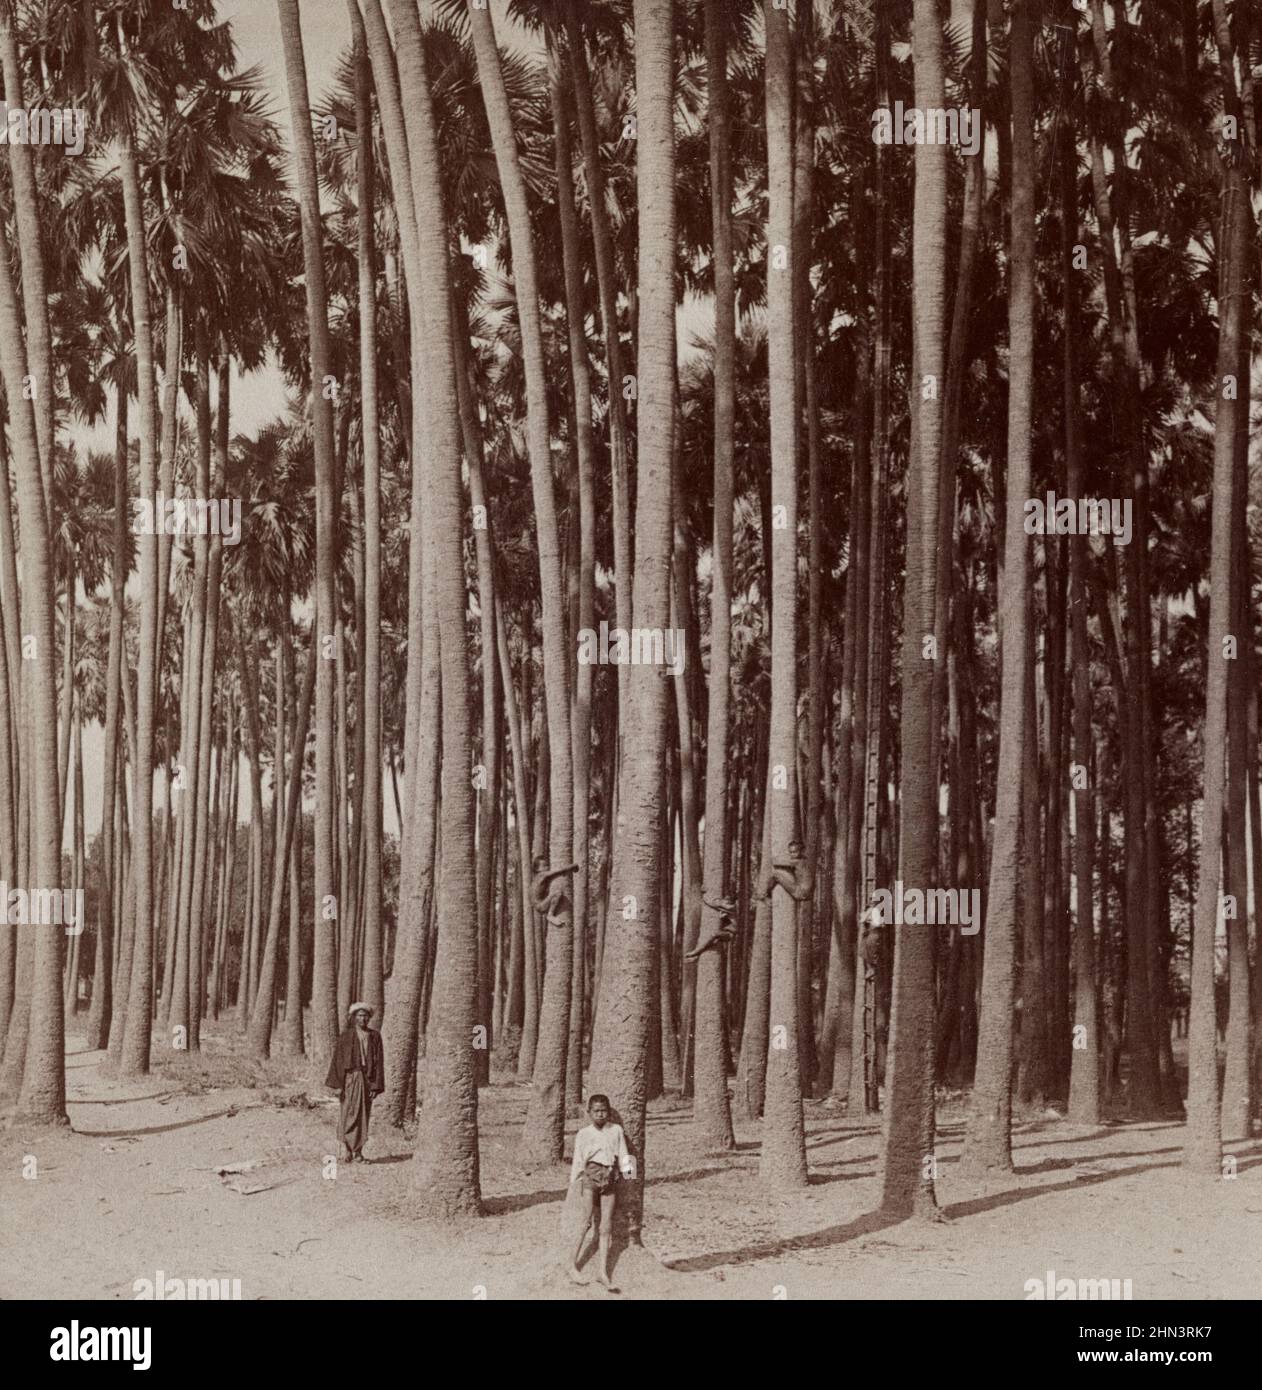 Photo vintage de palmiers toddy (paume doub, palmier palmyra, Tala) de 100 pieds de hauteur (échelle de bambou sur le fond atteint la tige de fleur). Païen, Birmanie. Banque D'Images